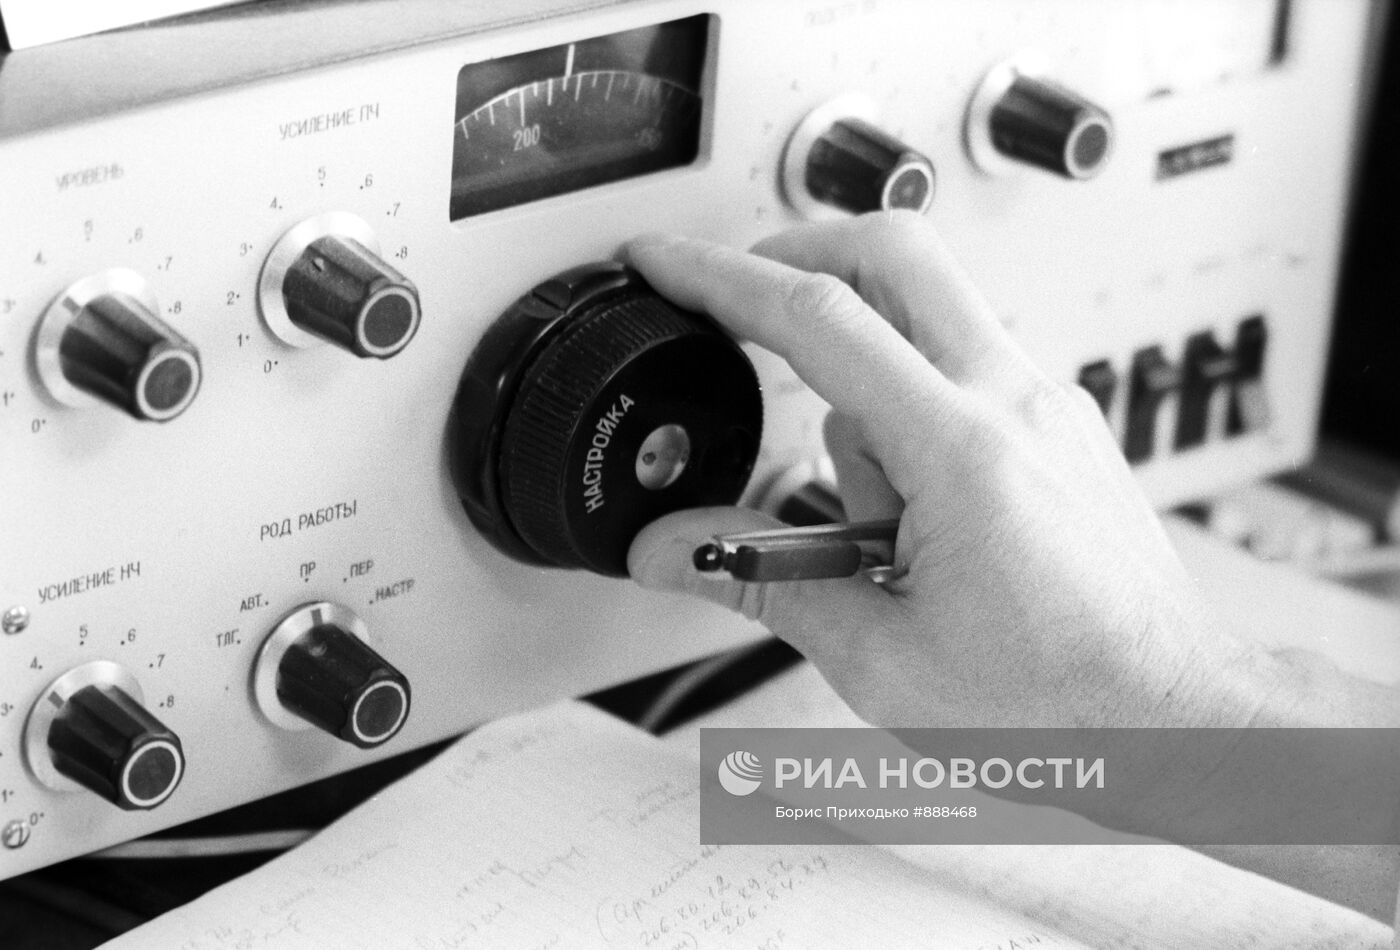 Аппаратура радиолюбителя Юрия Золотова